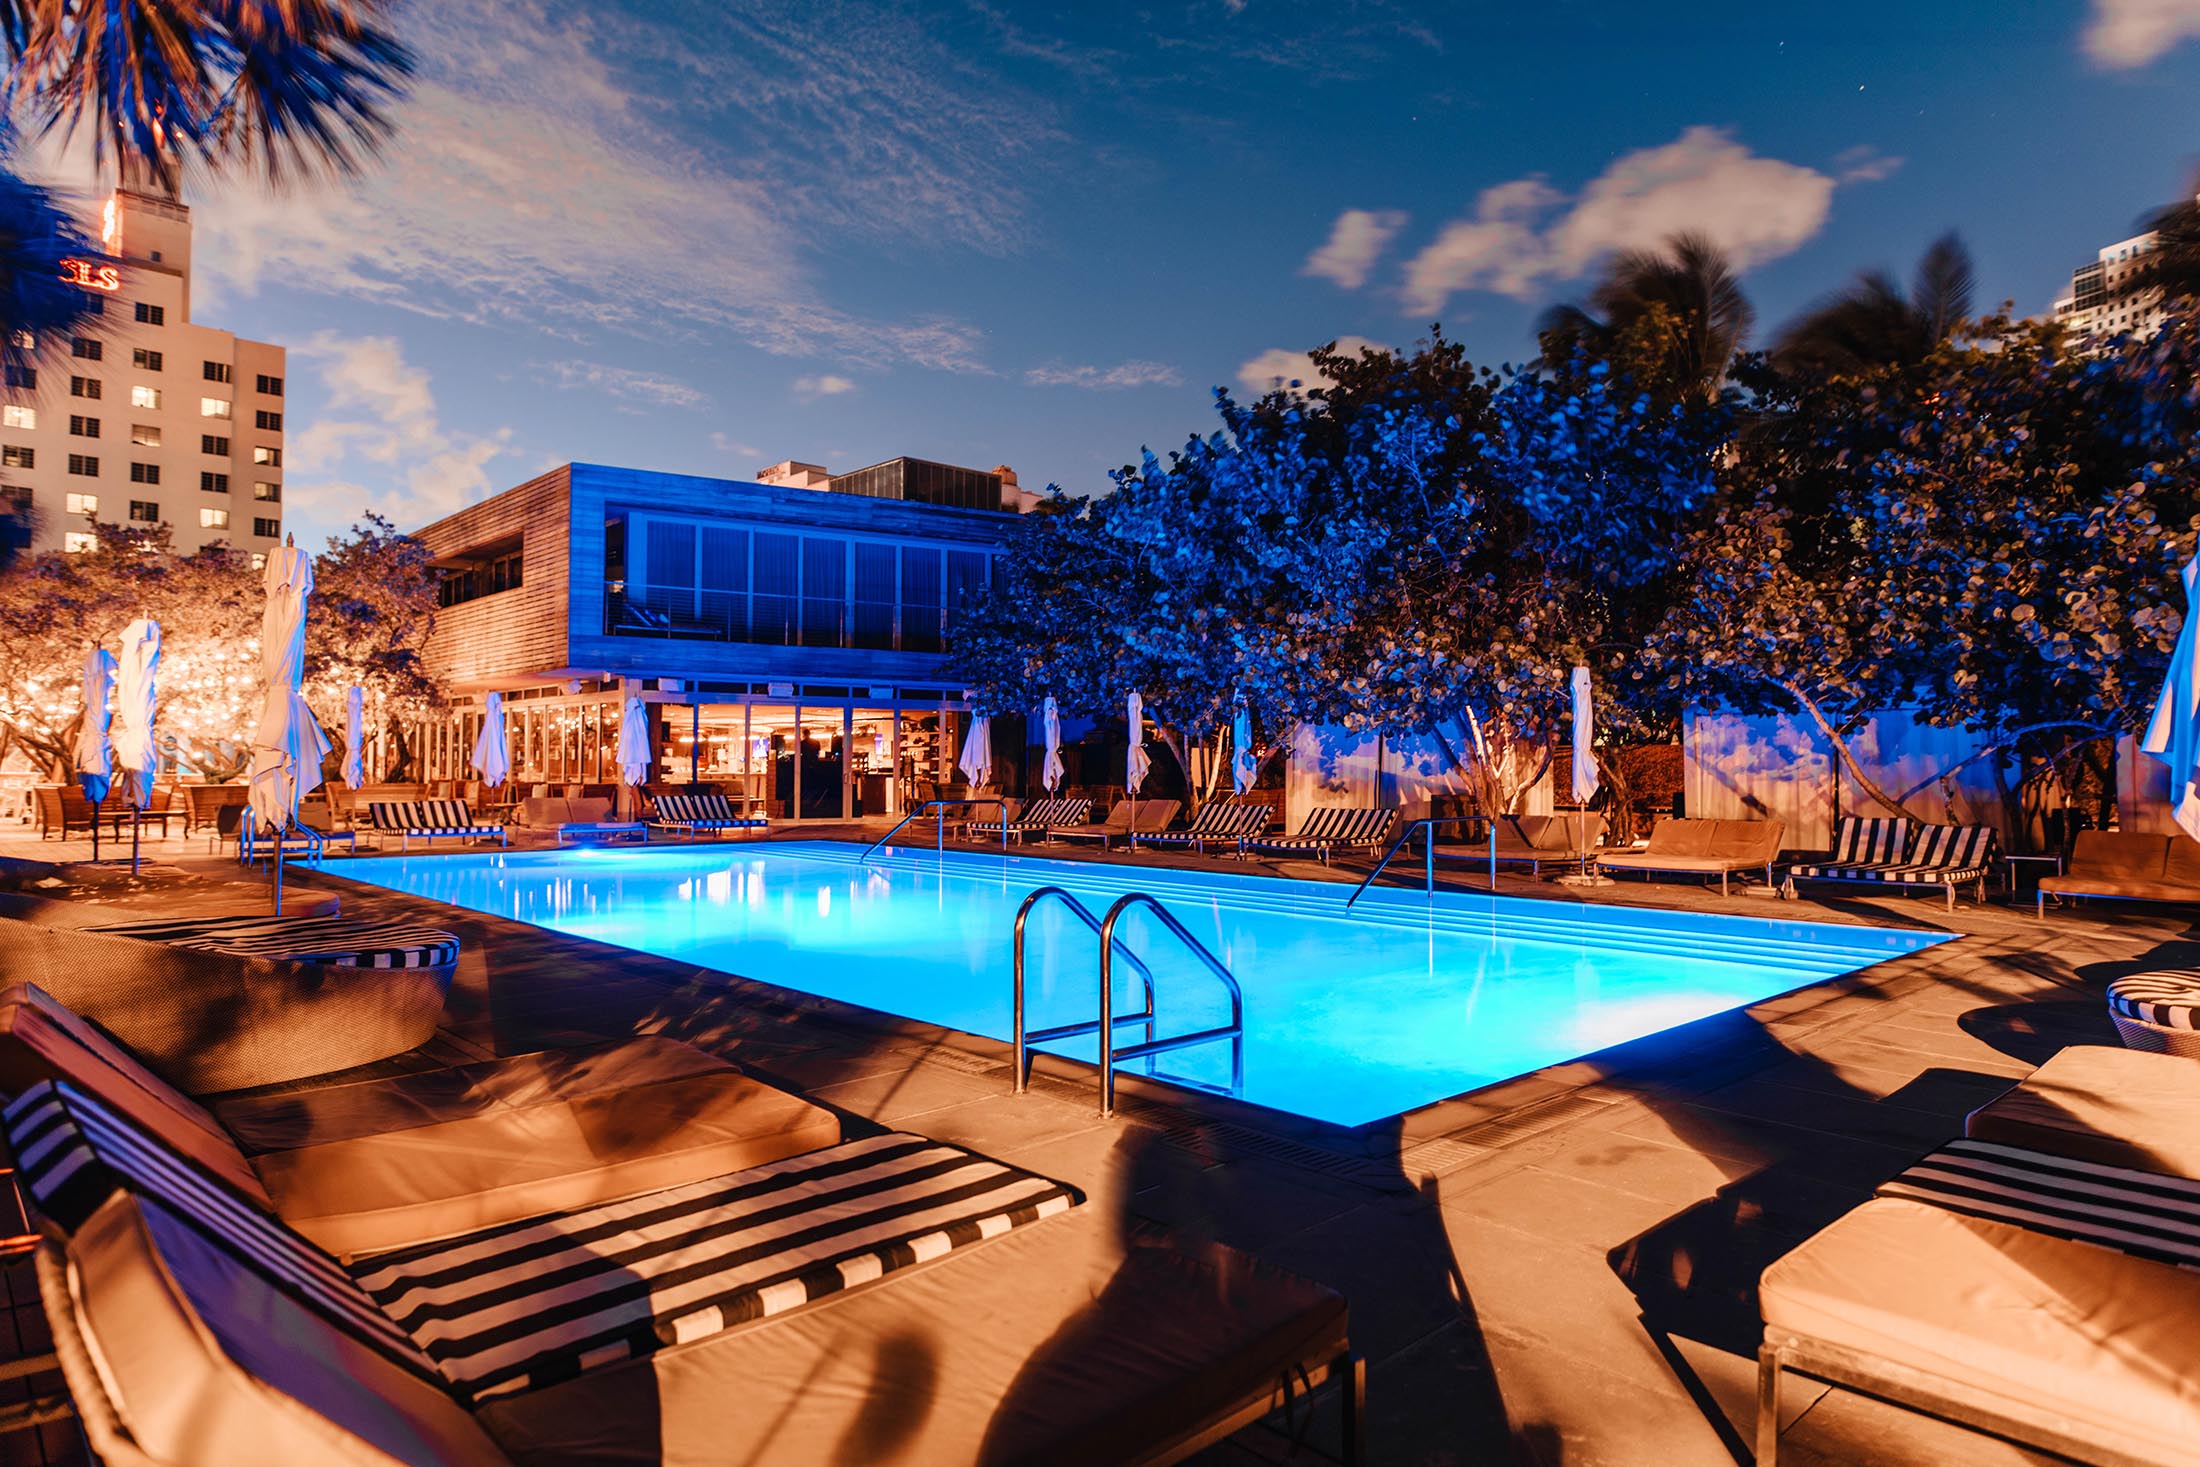 Pool Party in Miami ,MIAMI BEACH event in Miami Hotel , MIAMI B